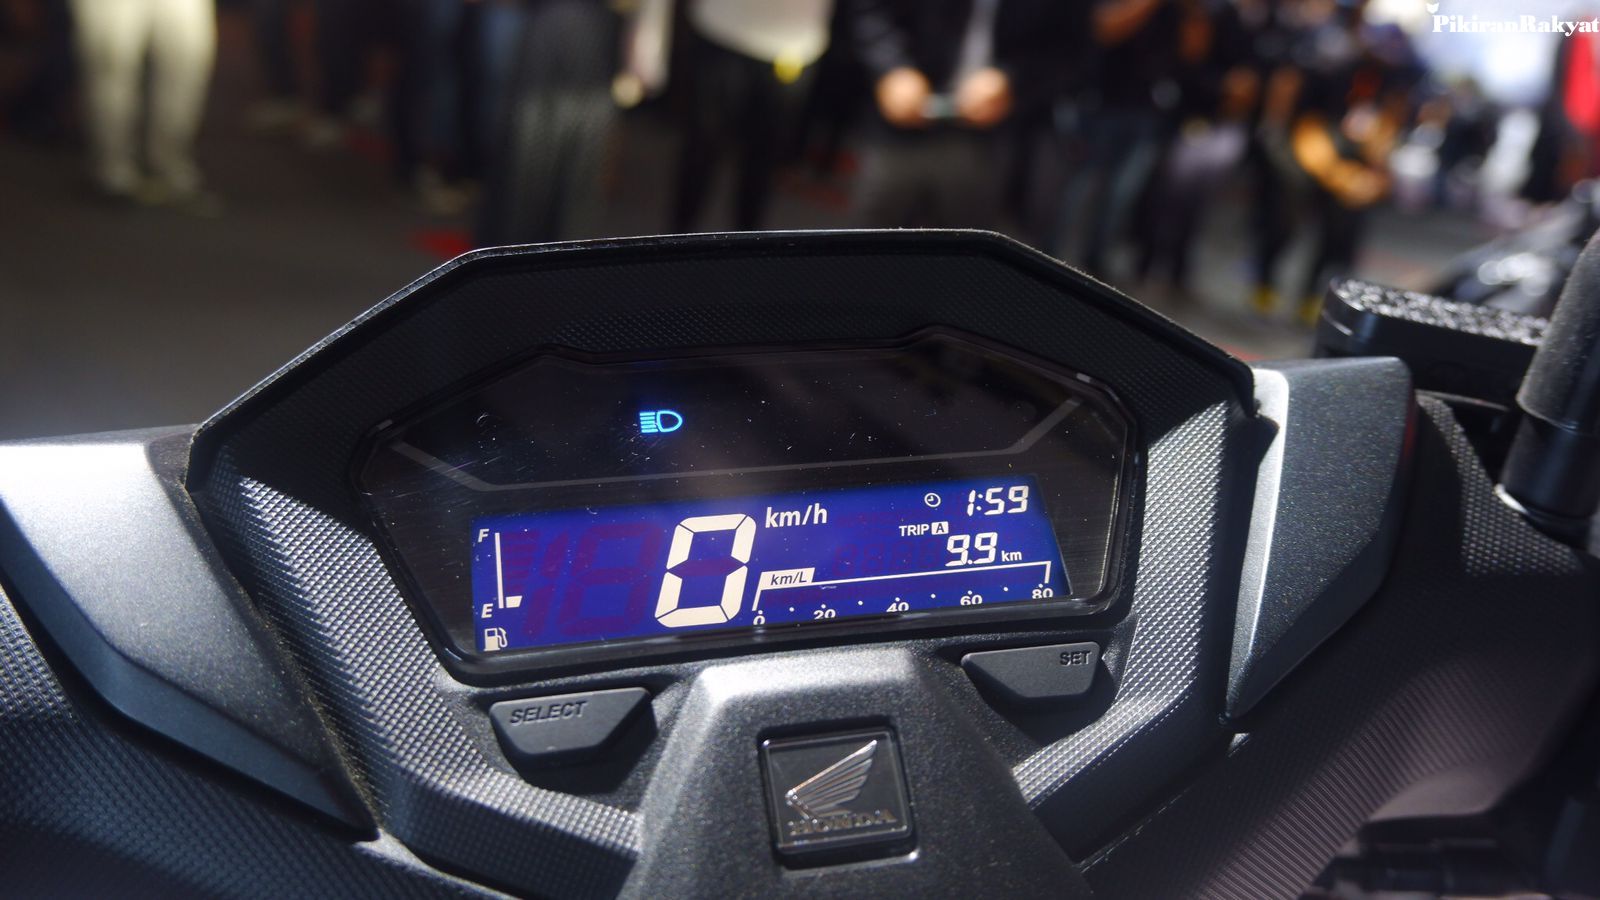 Arti 9 lampu indikator di simbol speedometer Honda Vario 160 cc ketika sedang menyala dan berkedip.